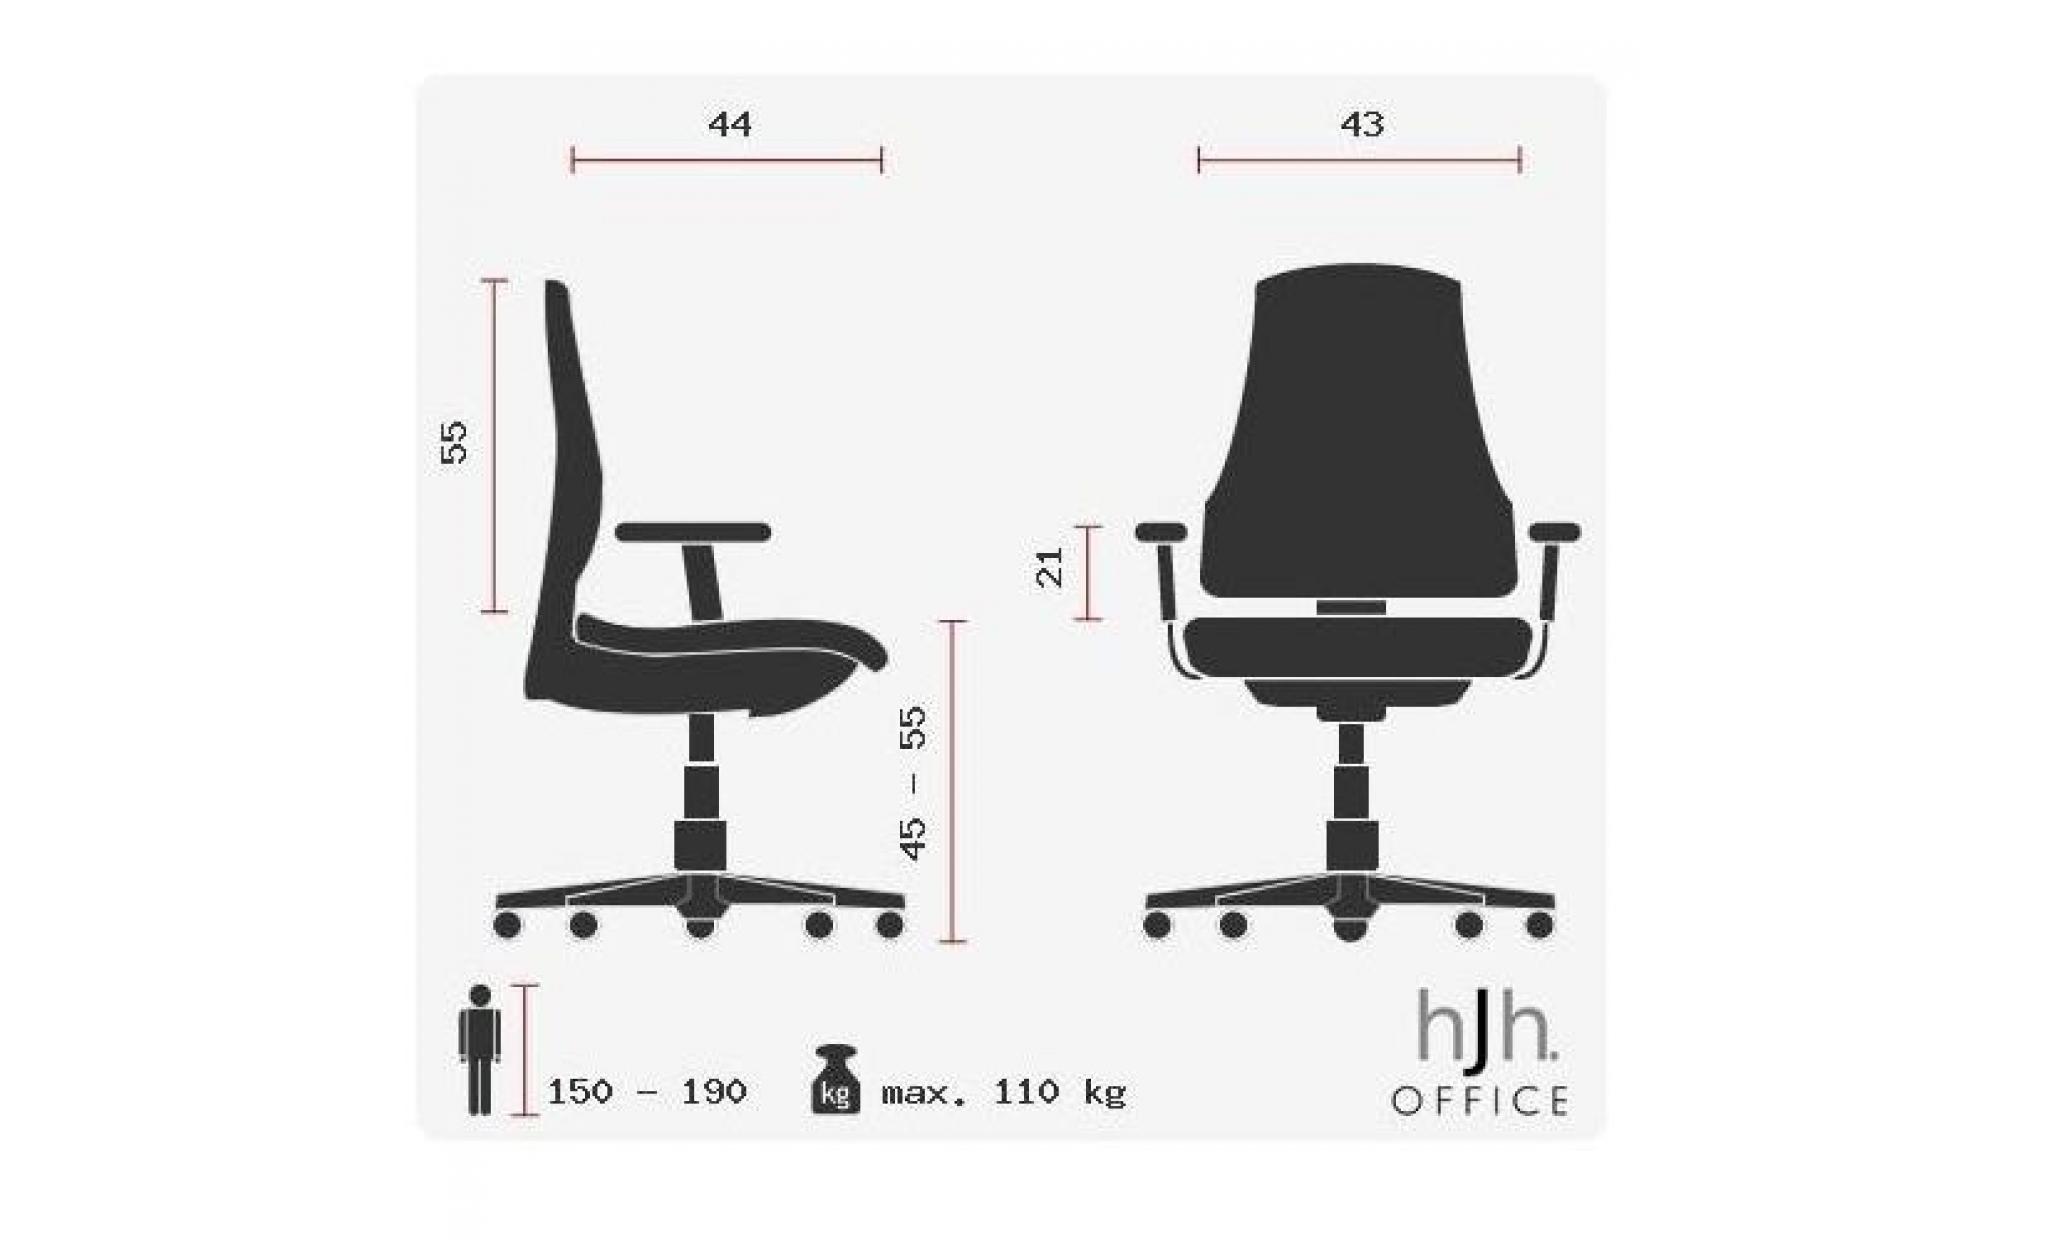 chaise de bureau / chaise pivotante estra black… pas cher